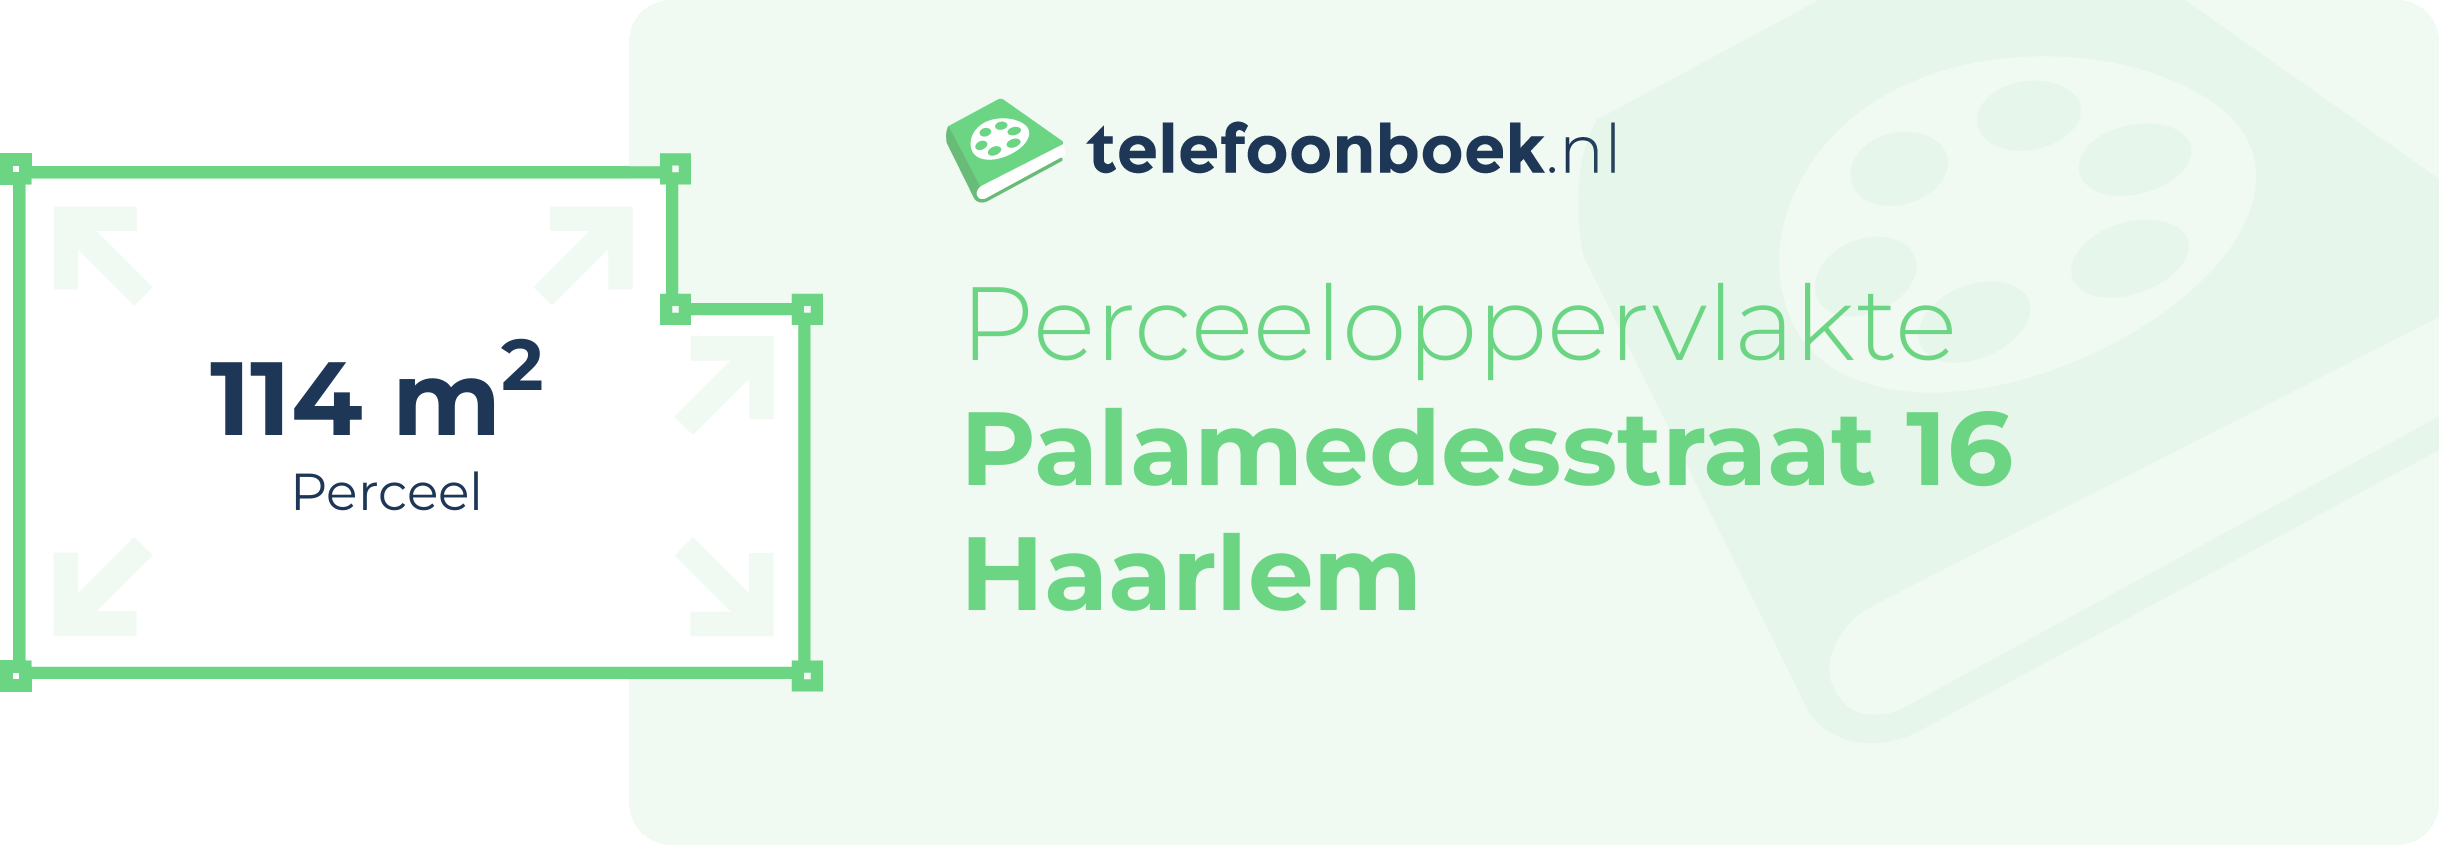 Perceeloppervlakte Palamedesstraat 16 Haarlem